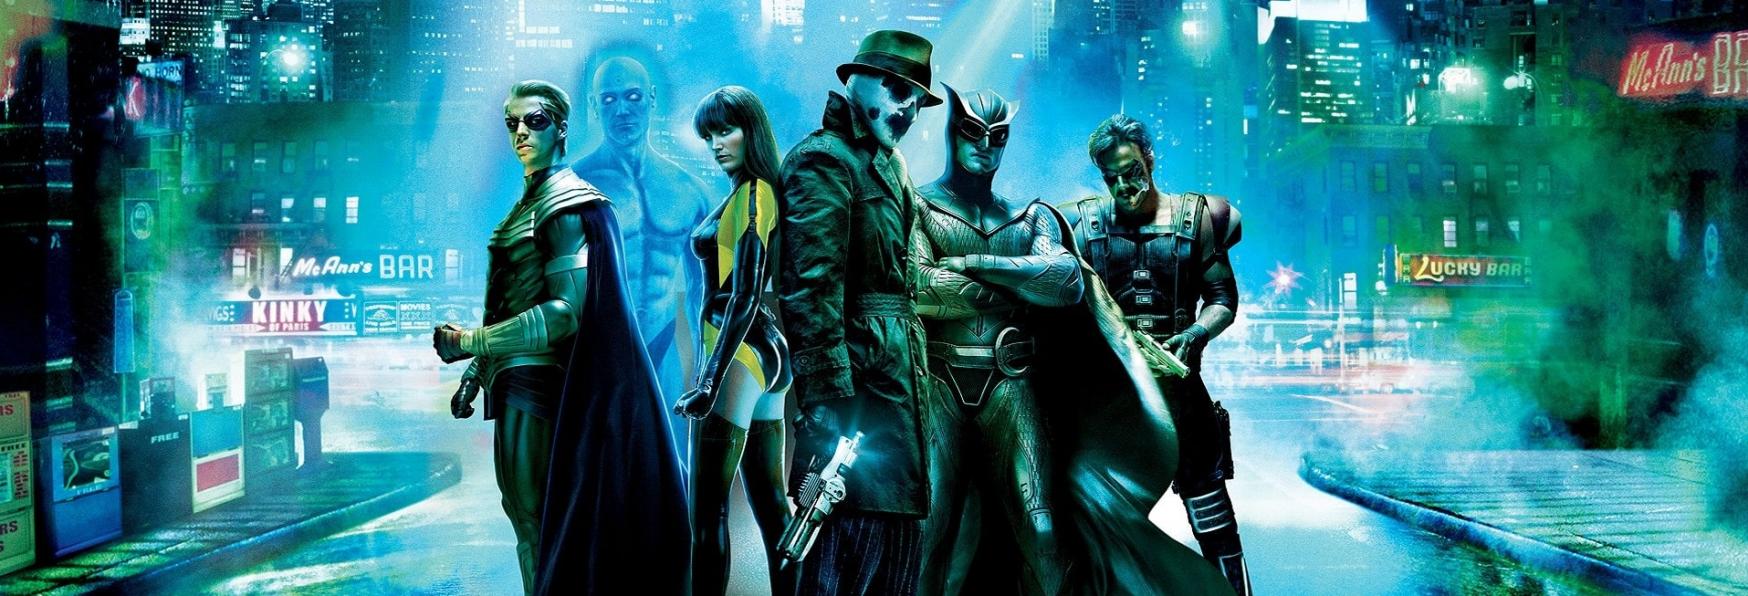 Watchmen 2: lo Scrittore spiega Perché non ci sarà una nuova Stagione della Serie TV HBO